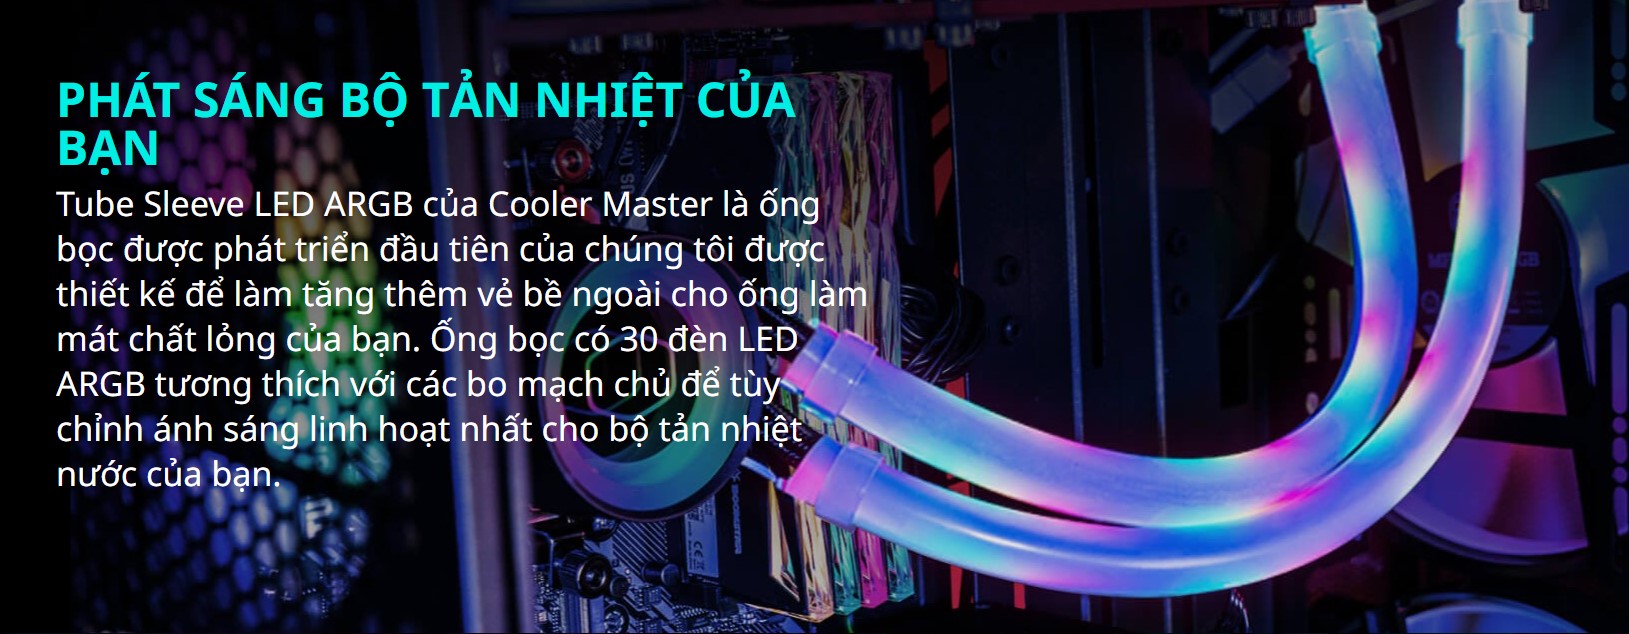 Bọc ống tản nhiệt nước Cooler Master A1 LED ARGB 10mm